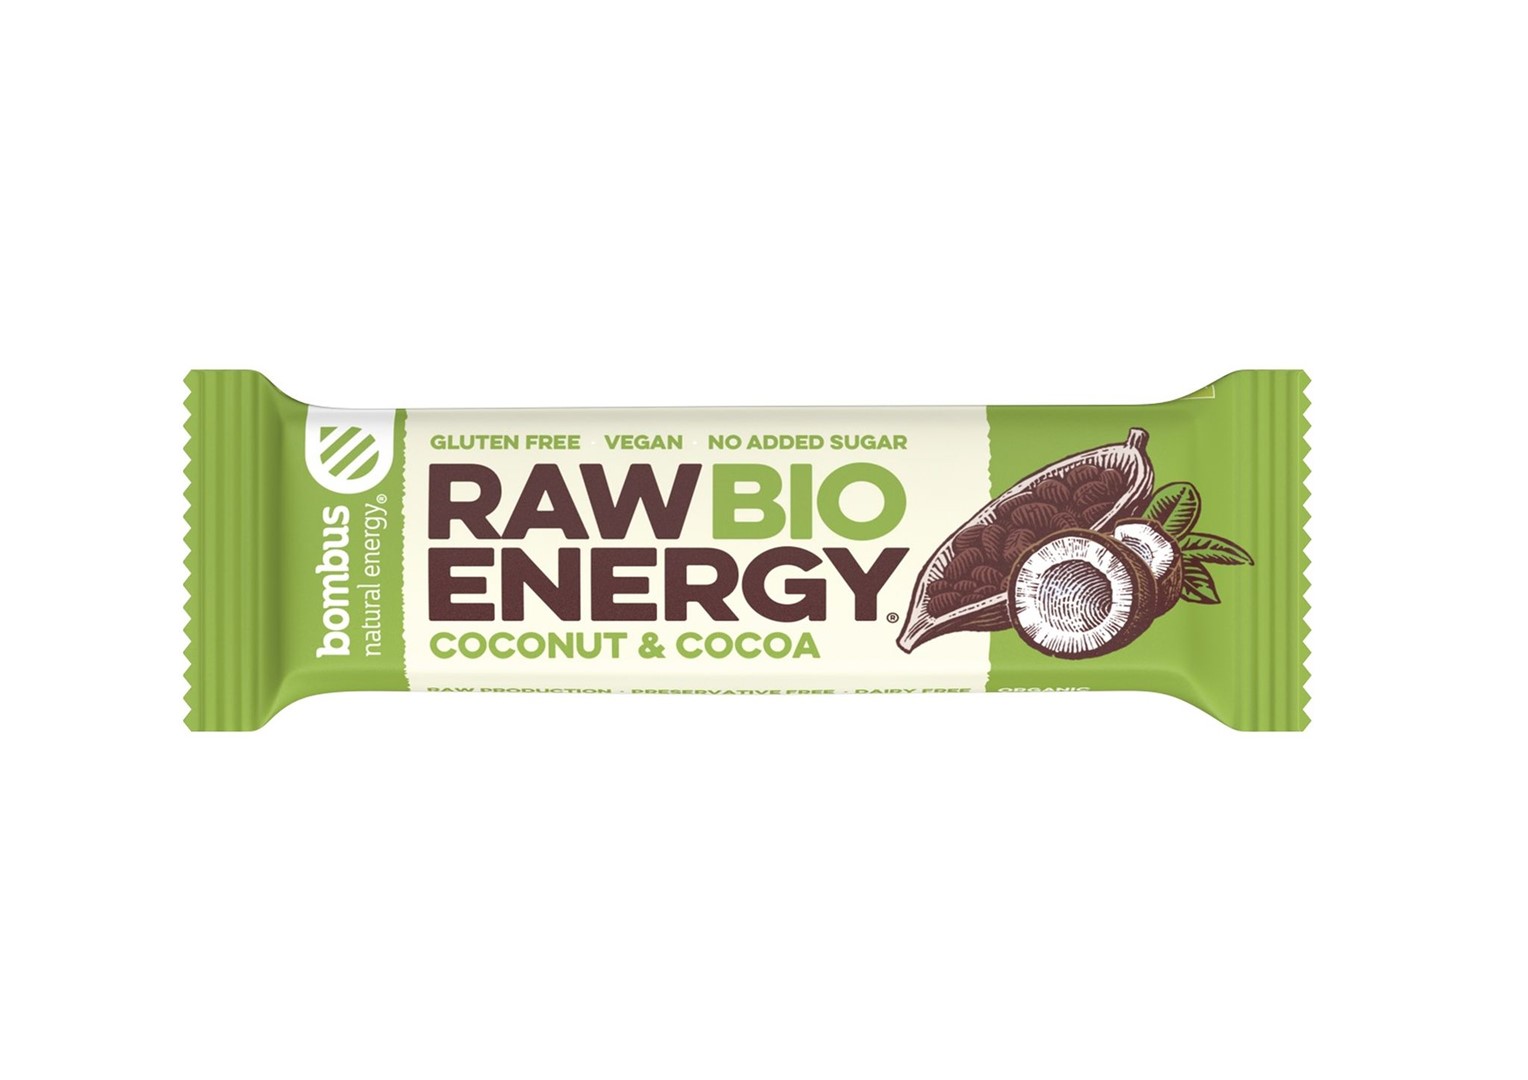 Baton RAW ENERGY BIO kokos-kakao BEZGL. BIO 50 g